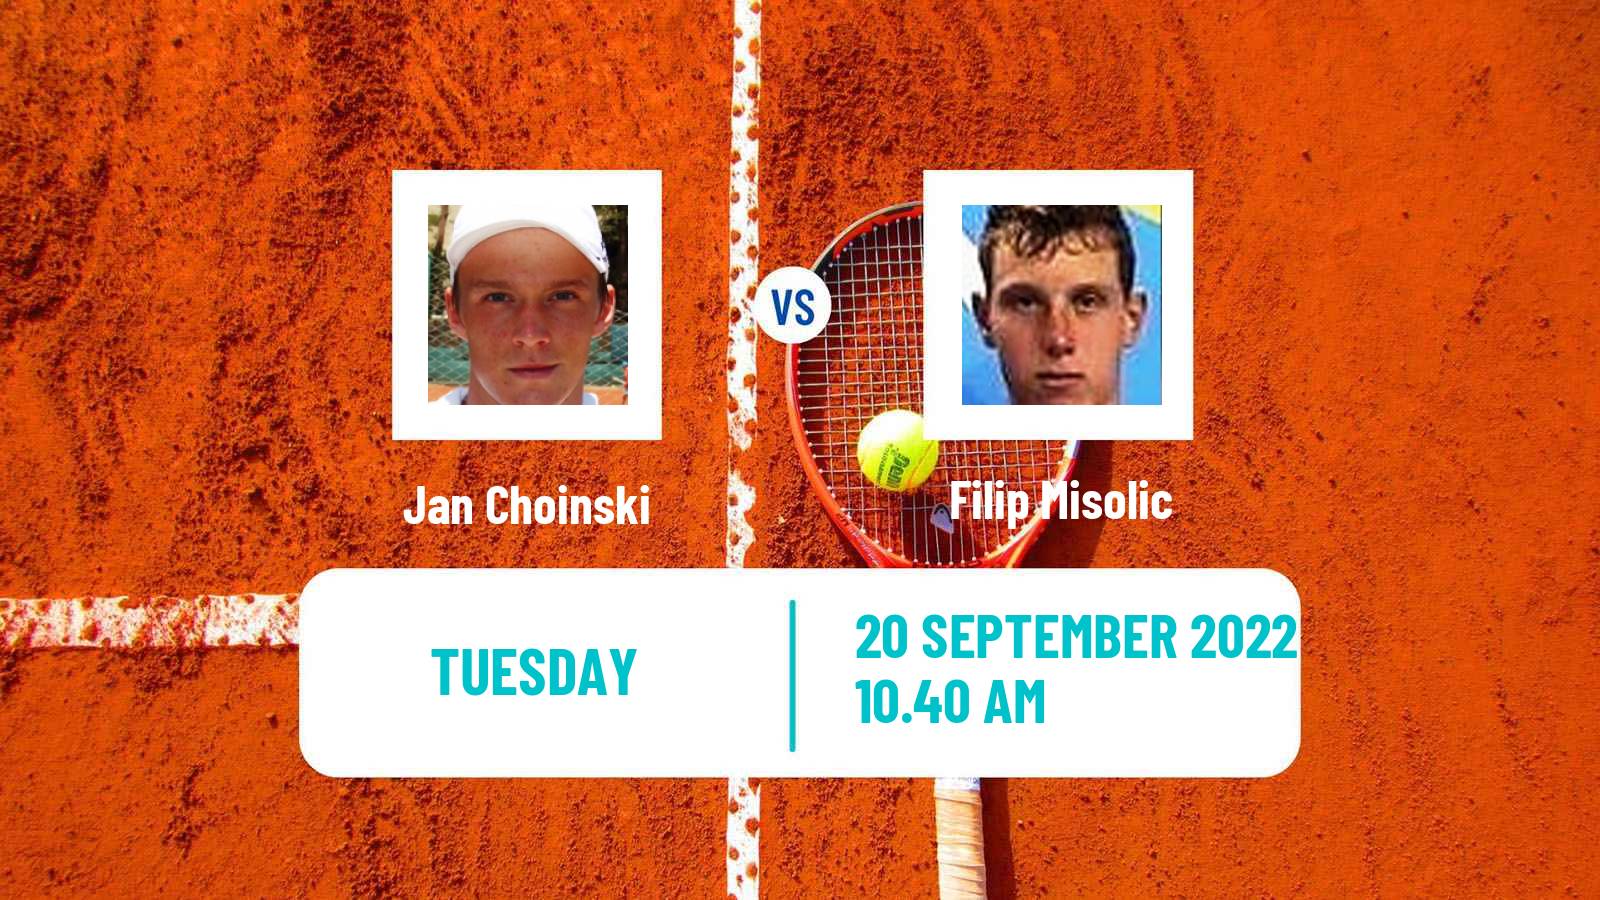 Tennis ATP Challenger Jan Choinski - Filip Misolic